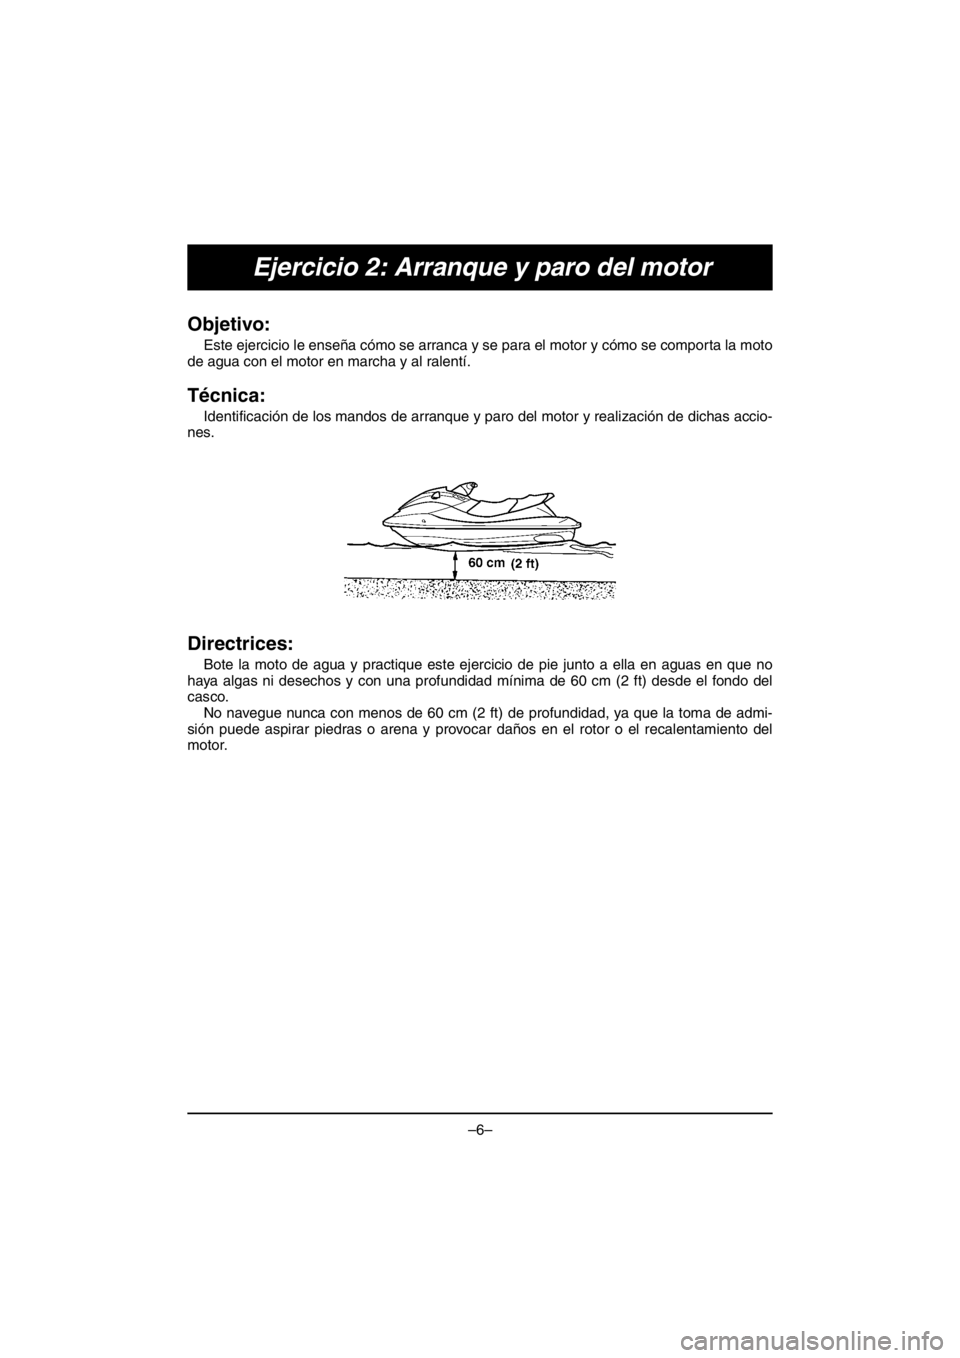 YAMAHA V1 2016  Manuale duso (in Italian) –6–
Ejercicio 2: Arranque y paro del motor
Objetivo: 
Este ejercicio le enseña cómo se arranca y se para el motor y cómo se comporta la moto
de agua con el motor en marcha y al ralentí.
Técni